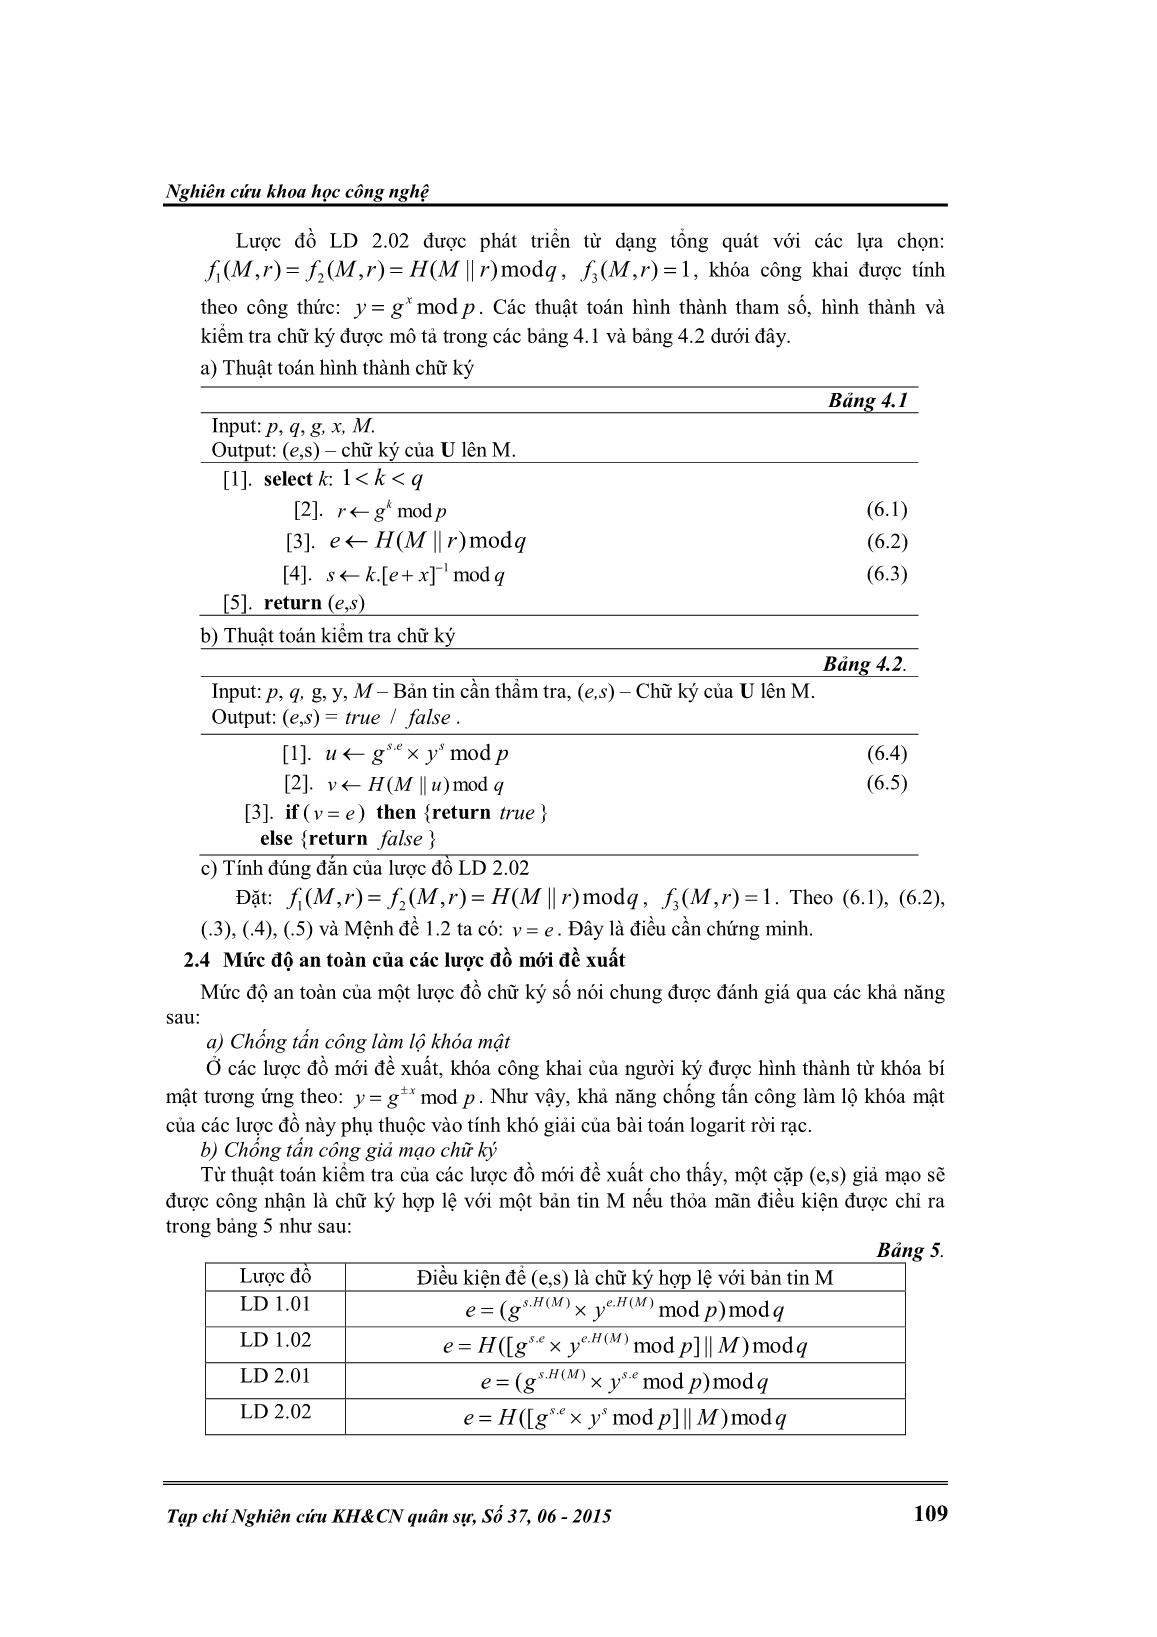 Phát triển lược đồ chữ ký số trên bài toán Logarit rời rạc trang 7